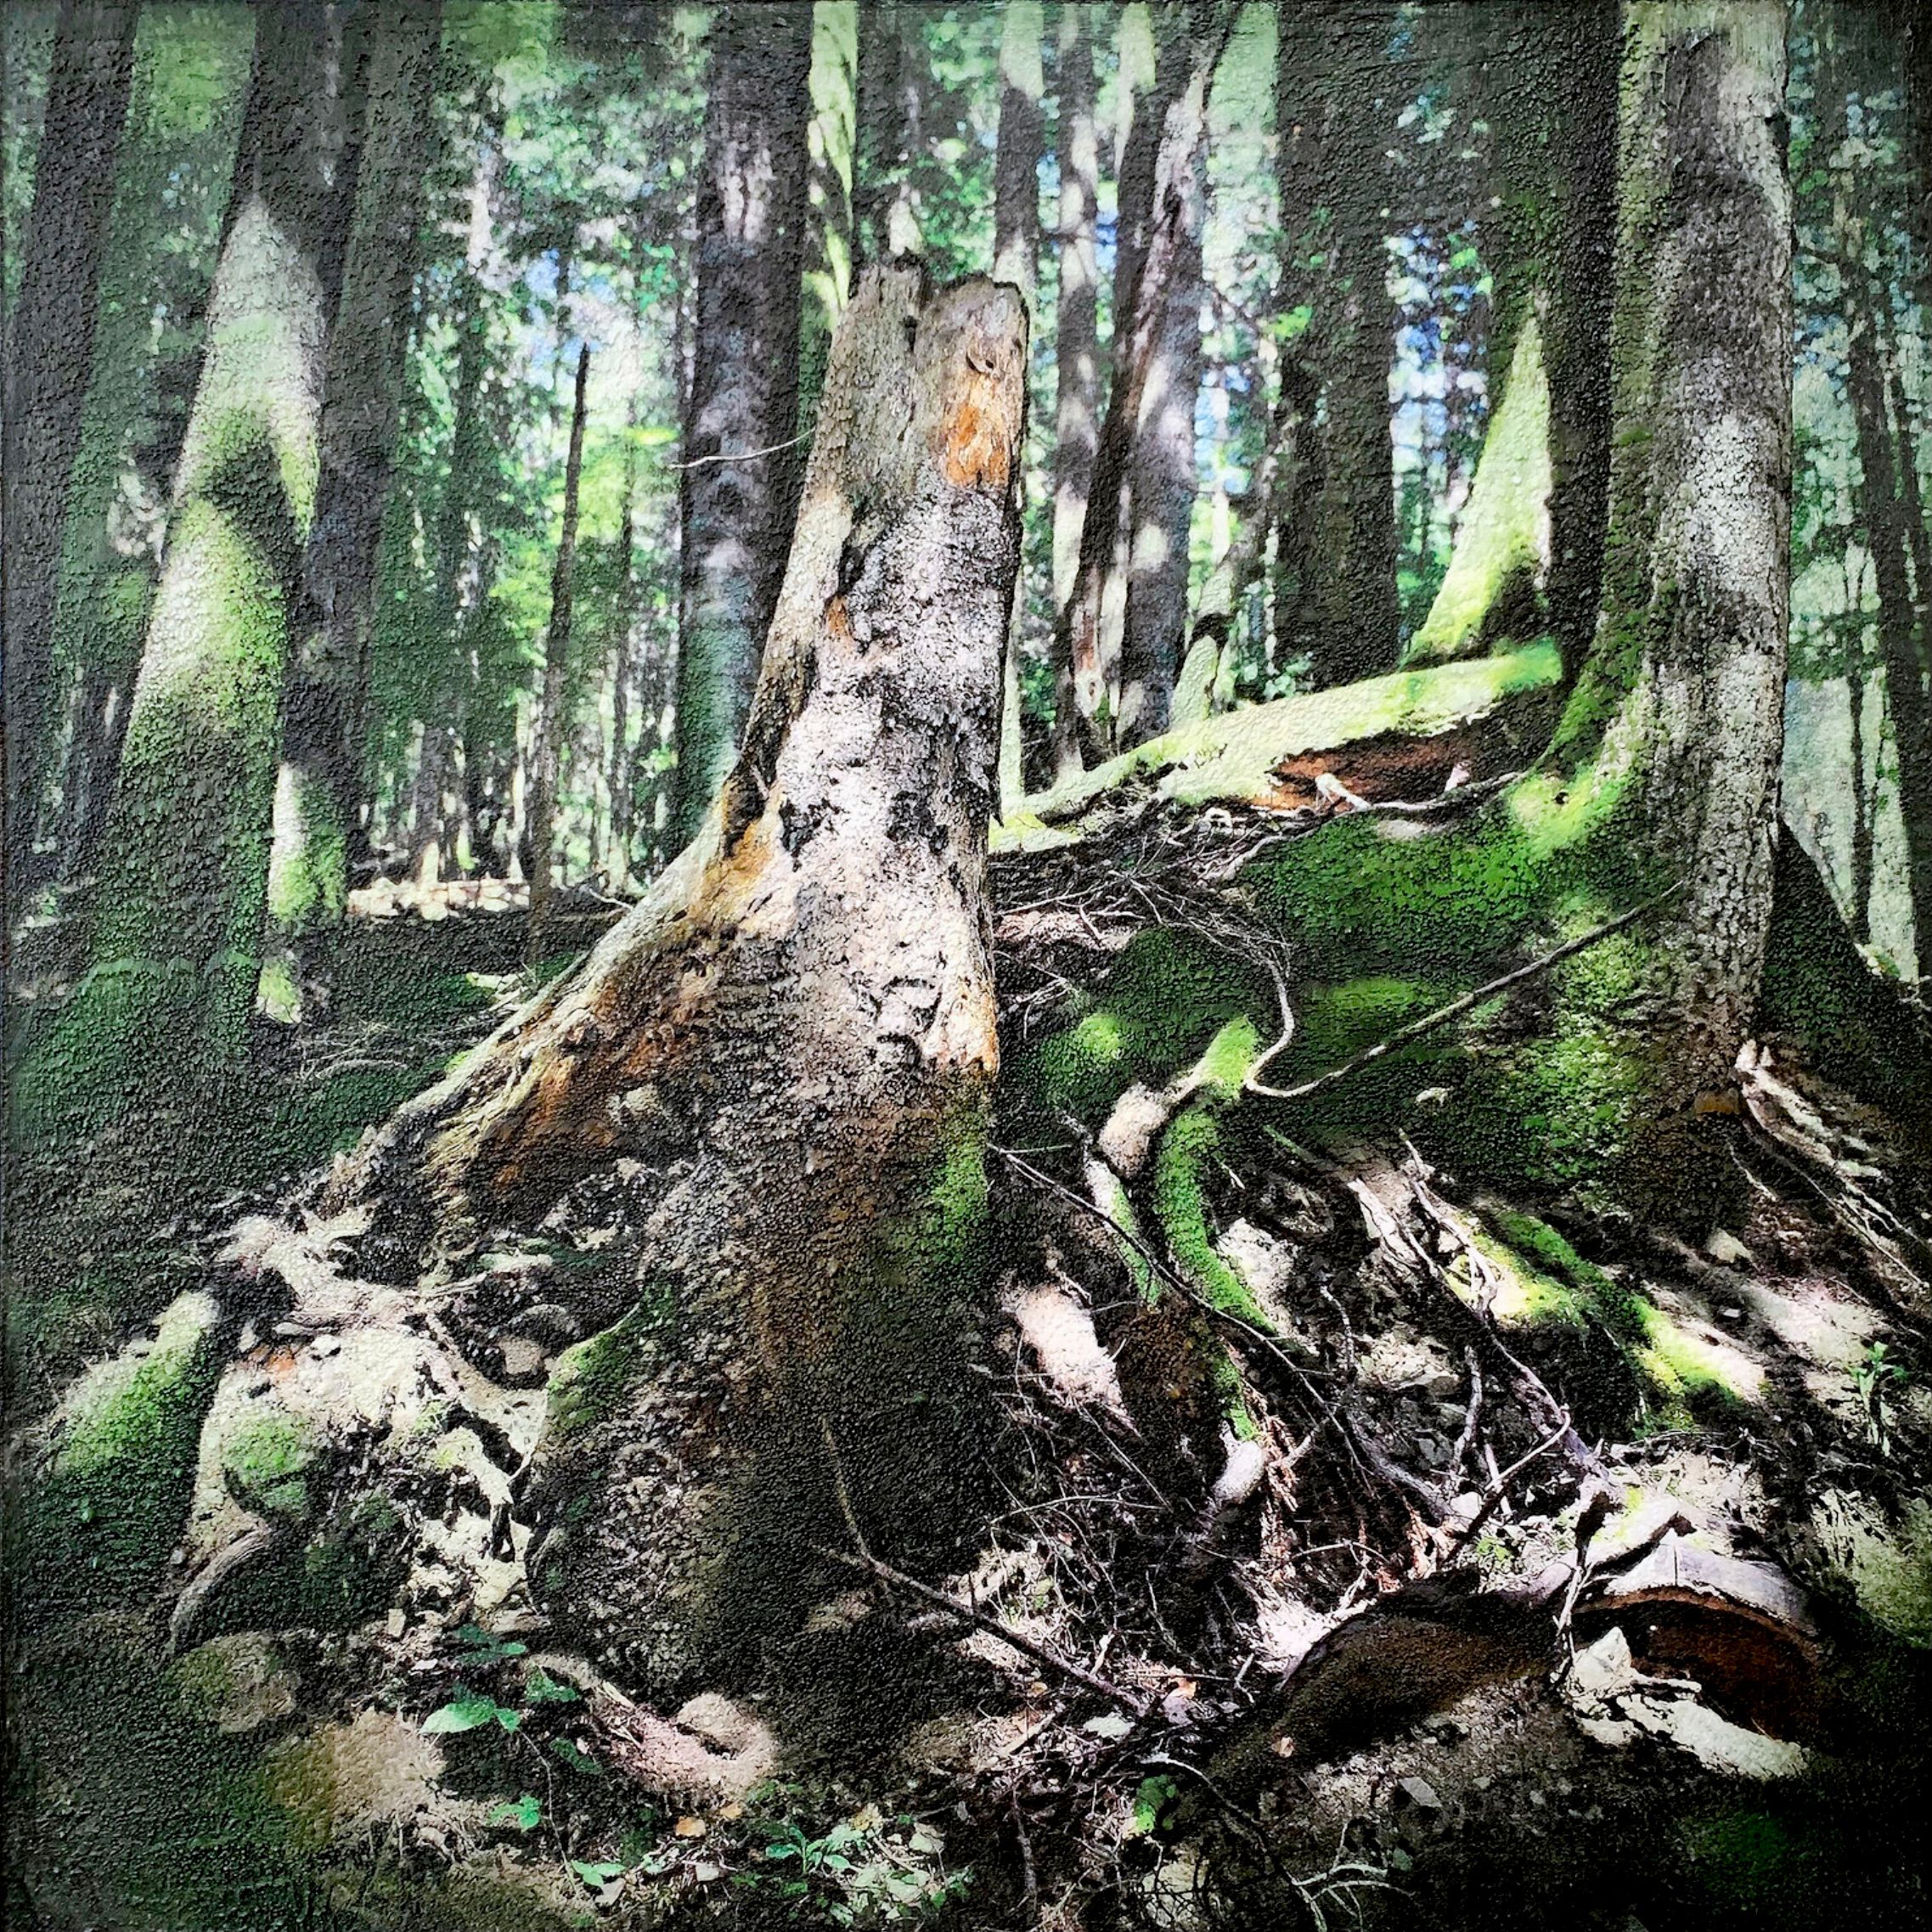 Riserva Statale Badia Prataglia-1", de Karin Vermeer, es una combinación y procesamiento digital de fotografías, pinturas y collage en una obra de arte única, muy estructurada y detallada. Casi puedes sumergirte en este paisaje forestal.